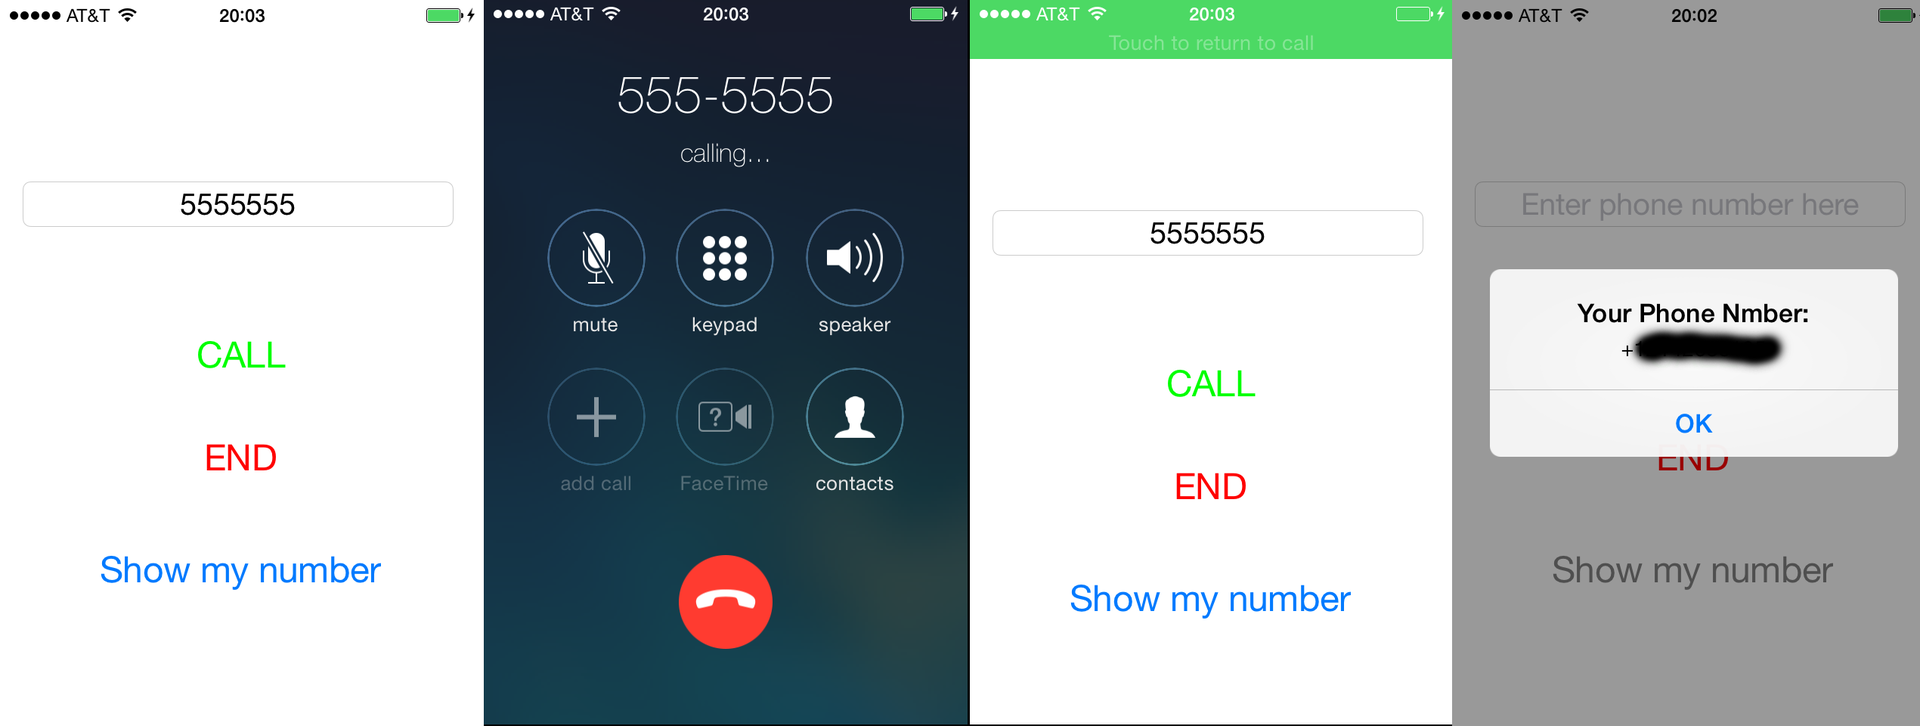 Как позвонить на iOS7 [jailbreak] из приложения?